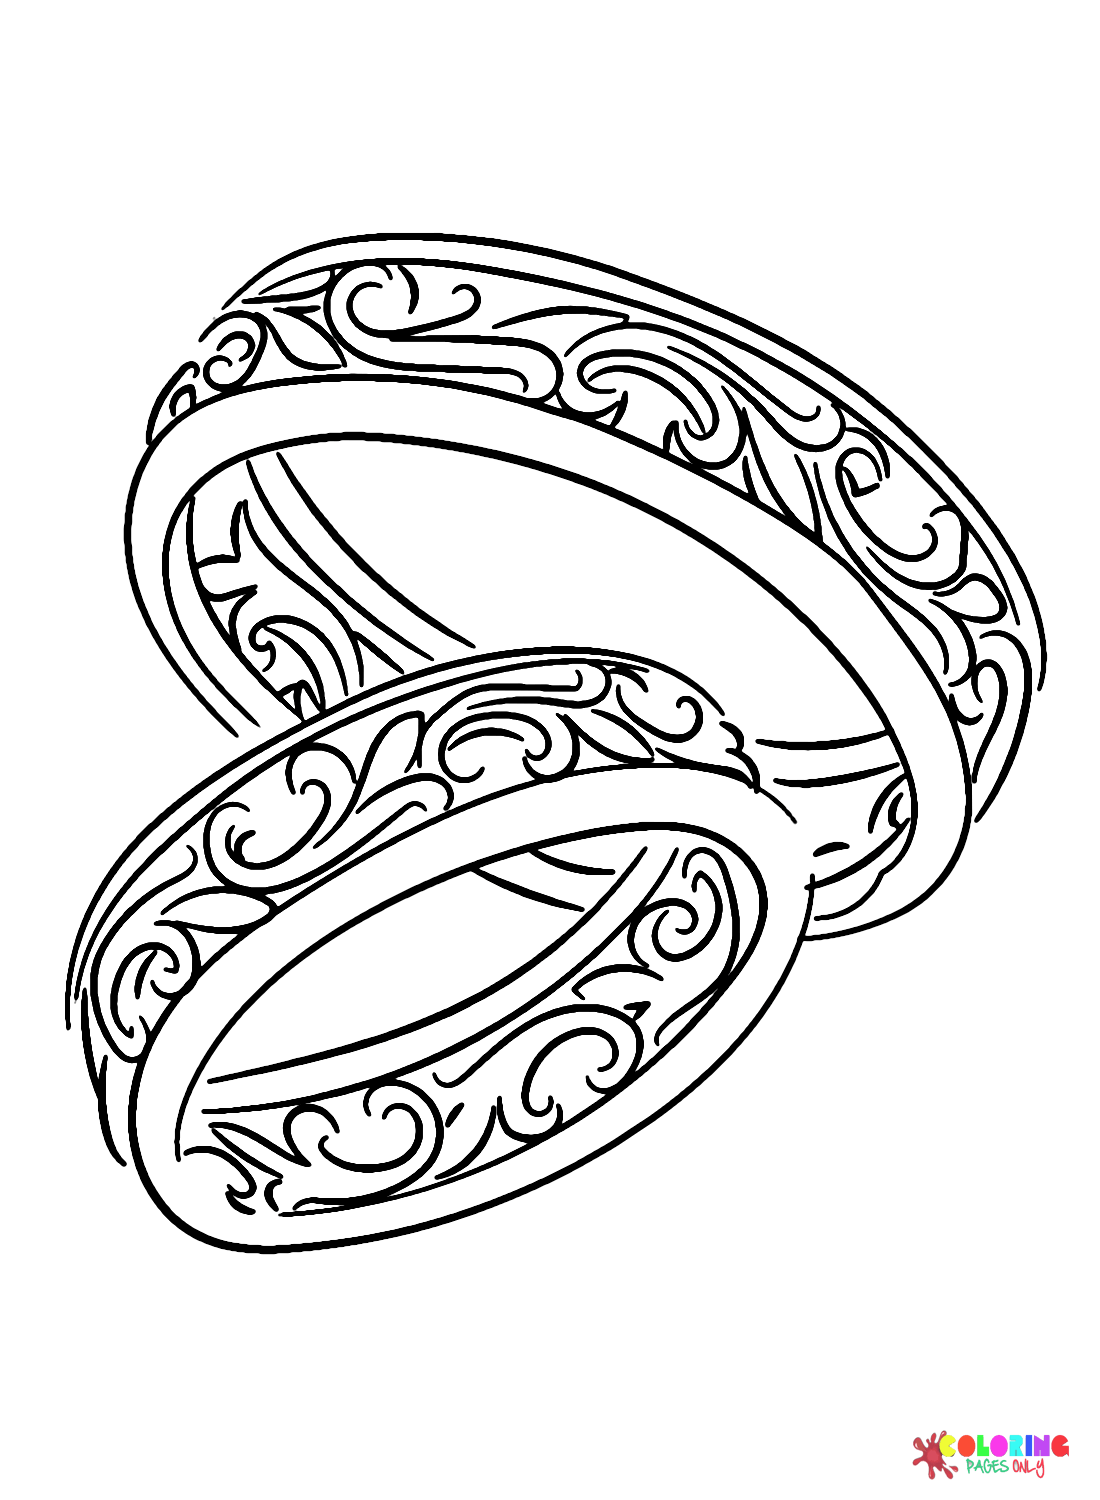 Design dell'anello nuziale dall'anello nuziale